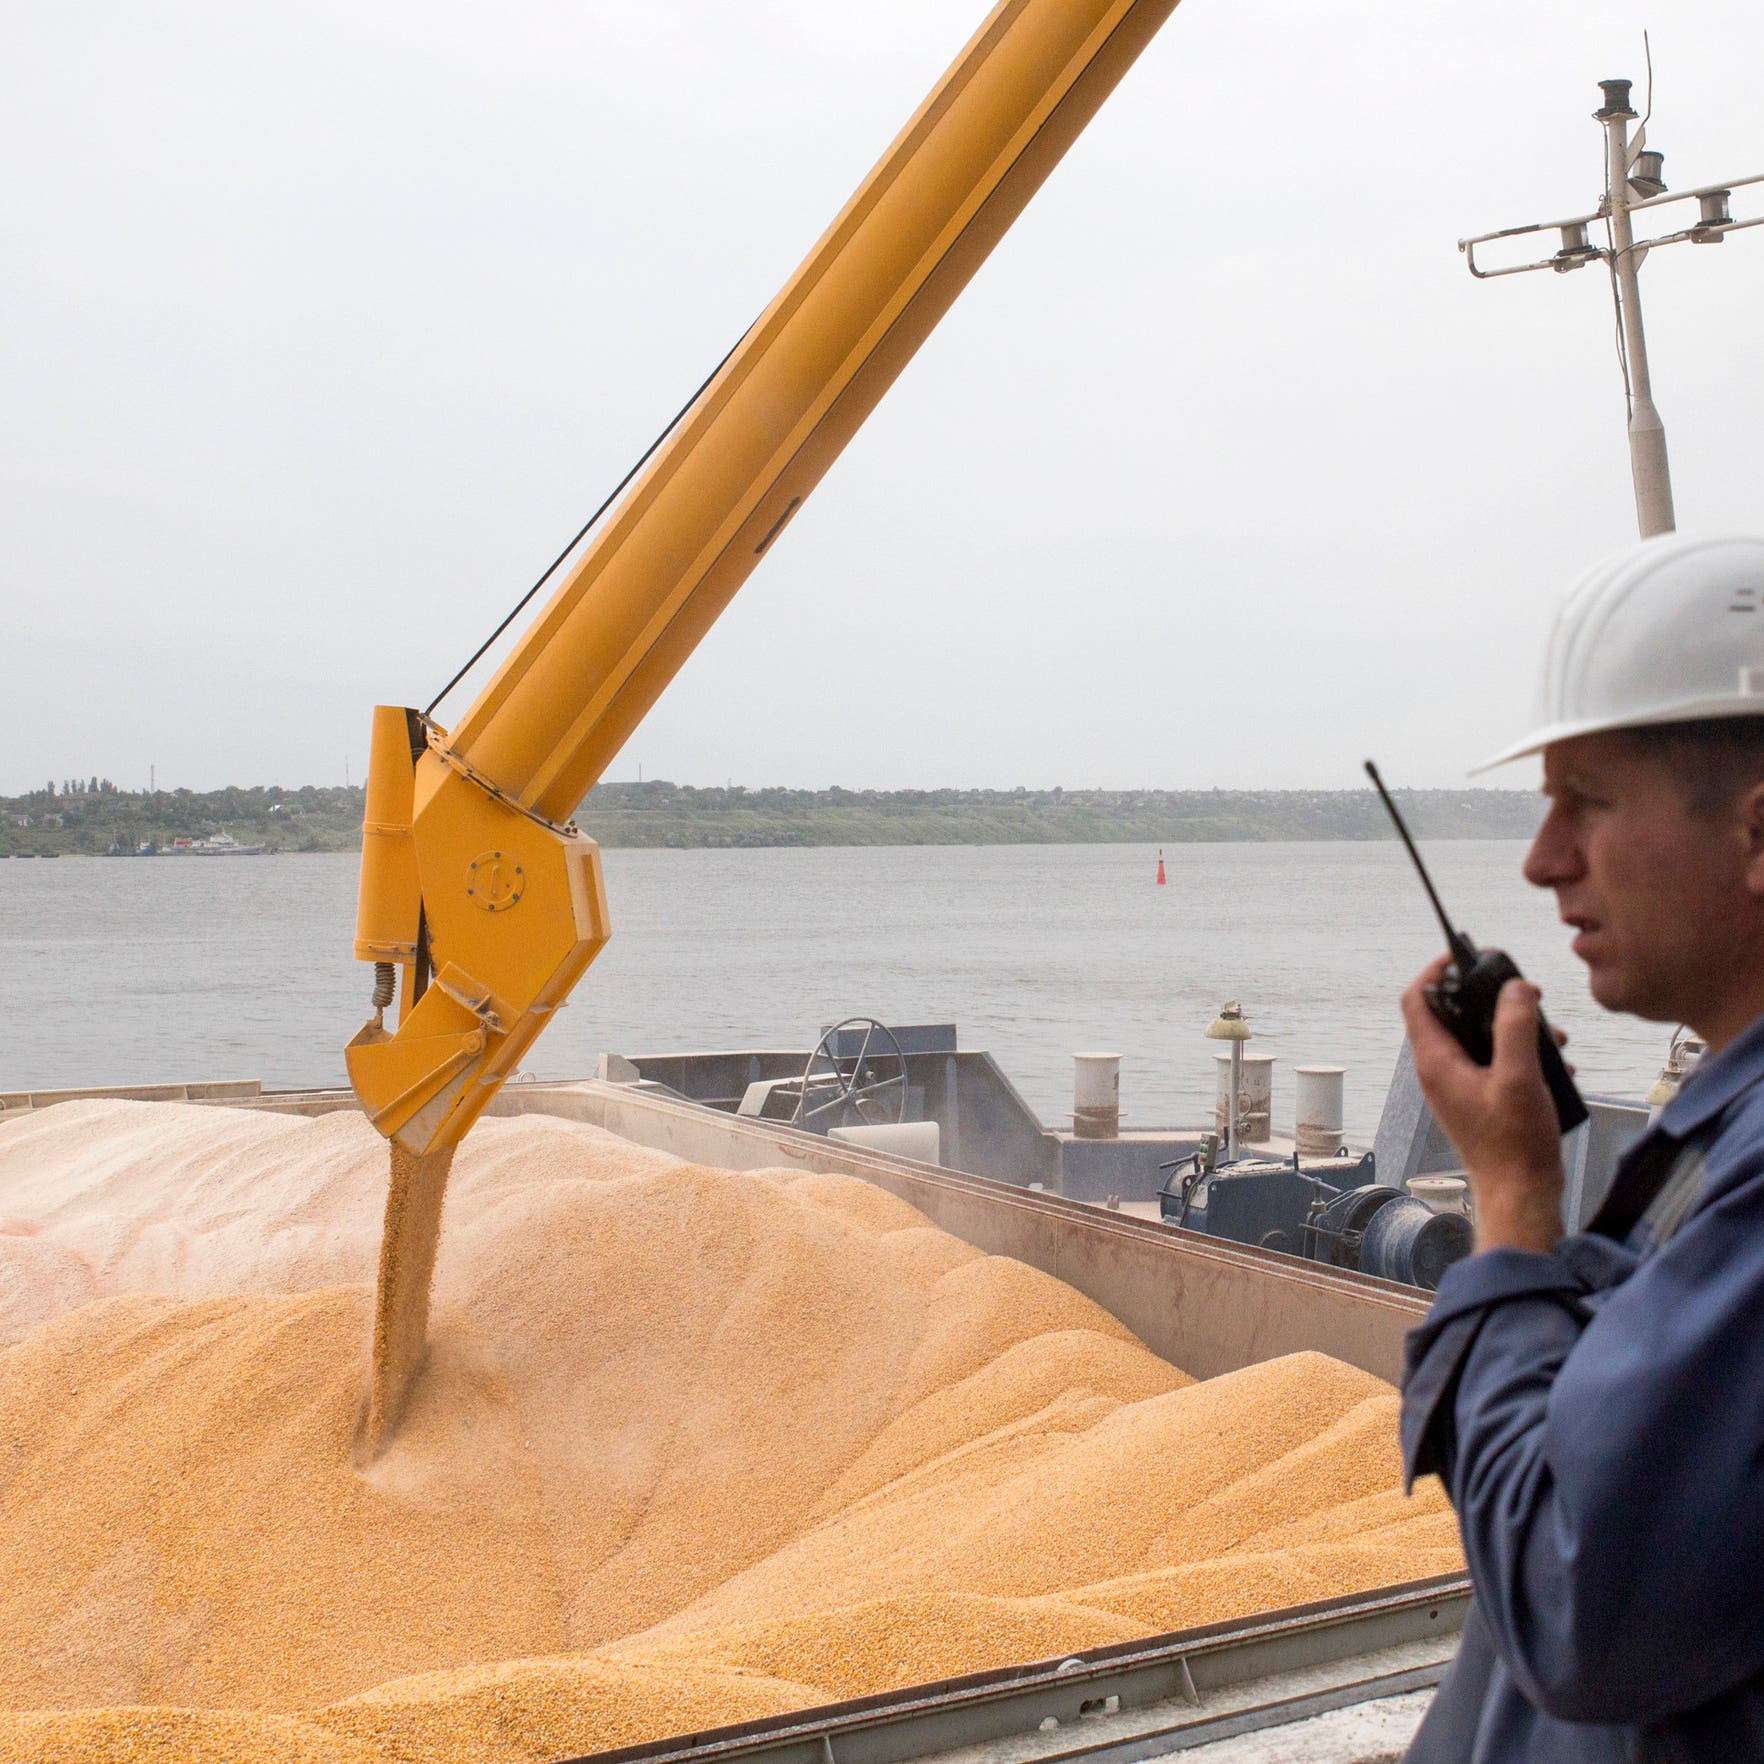 بعد حظر التصدير الهندي.. مستوردو القمح في آسيا يتسابقون على الإمدادات 